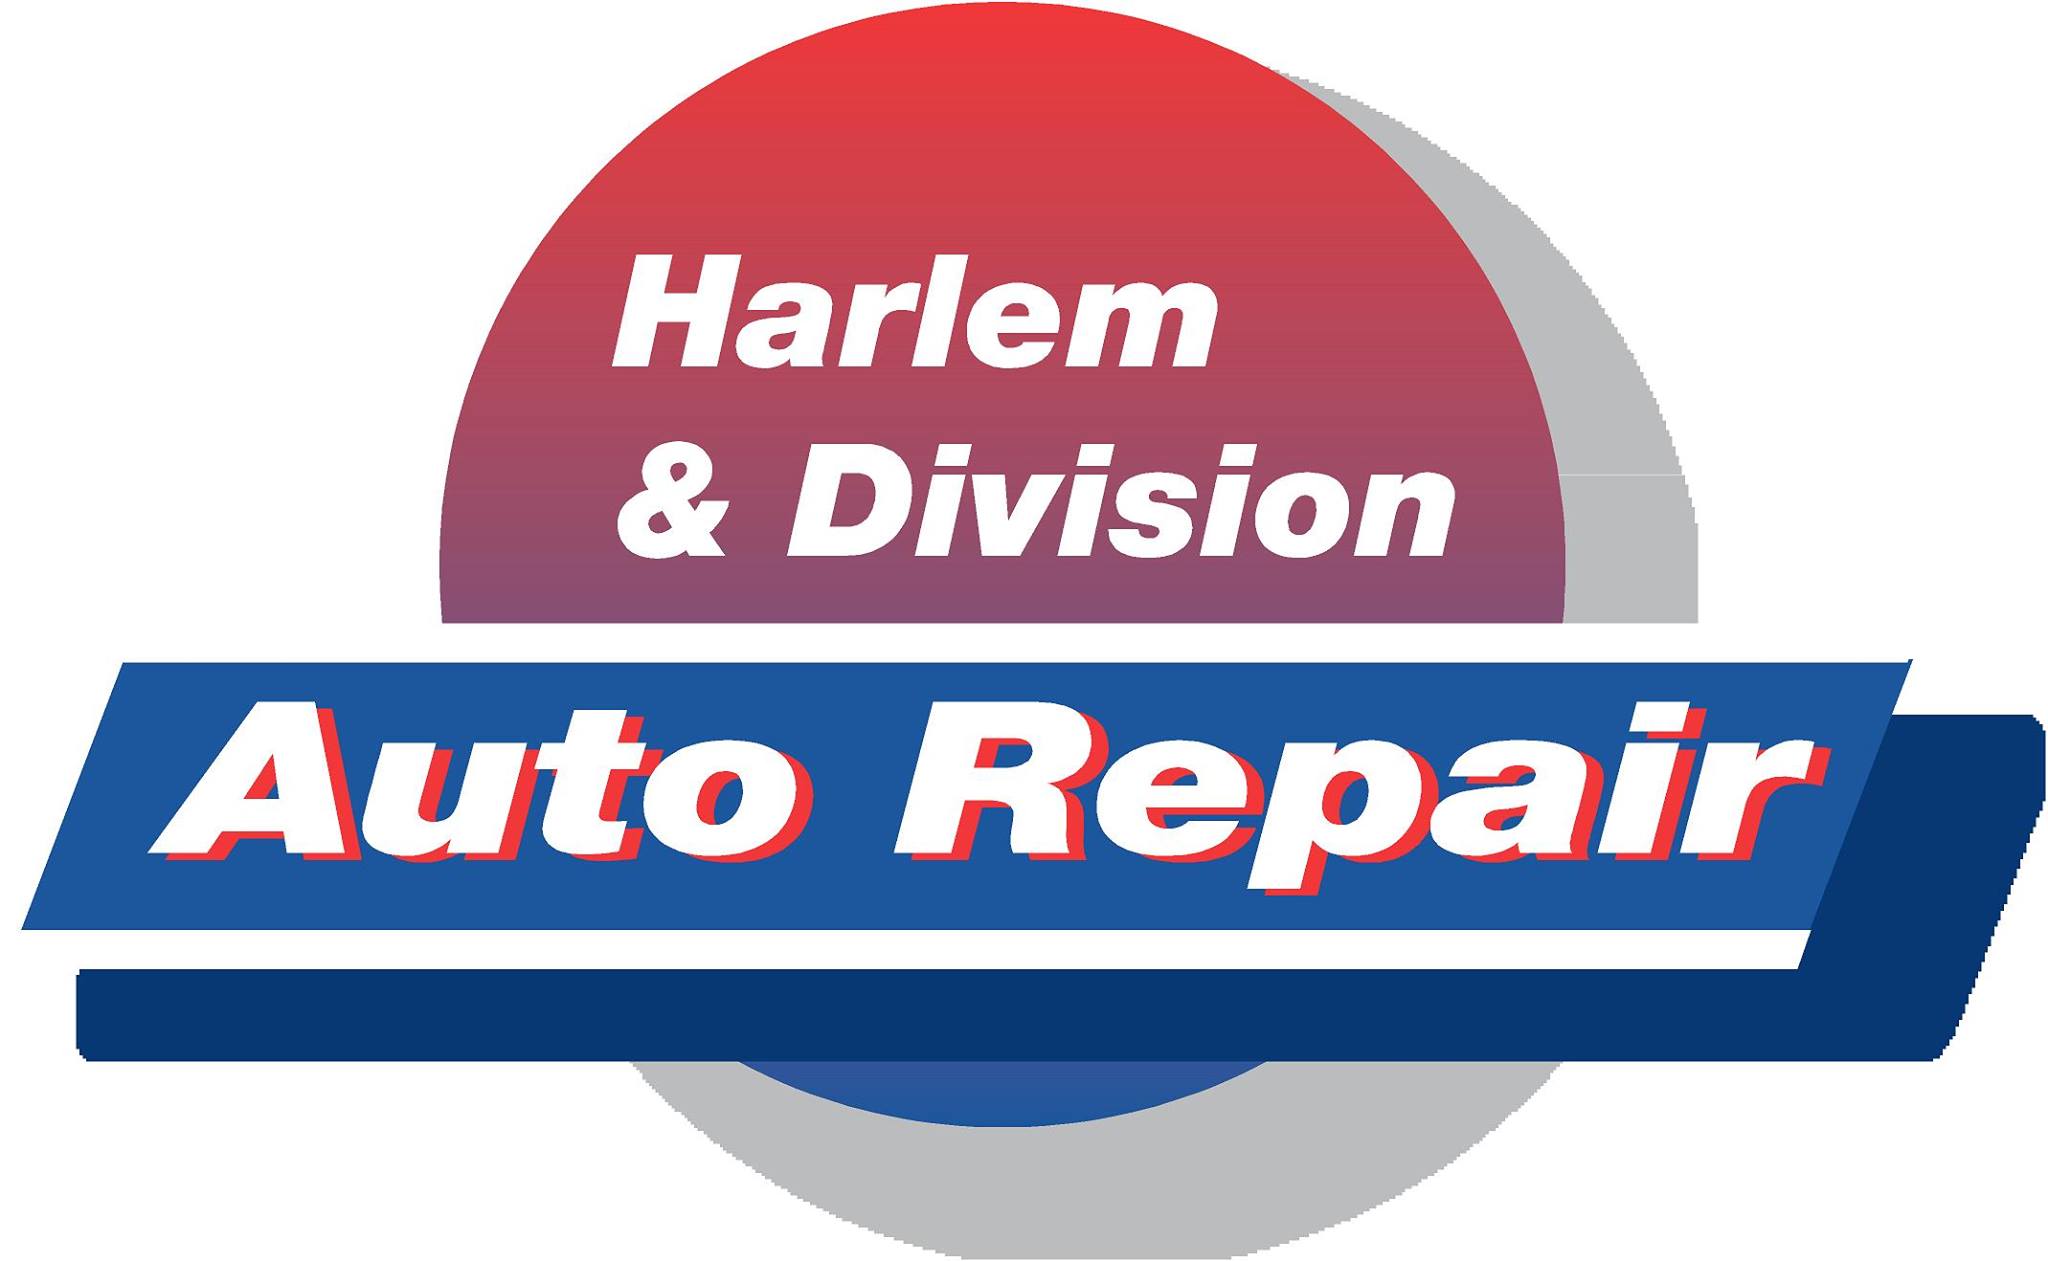 Harlem & Division Auto Repair